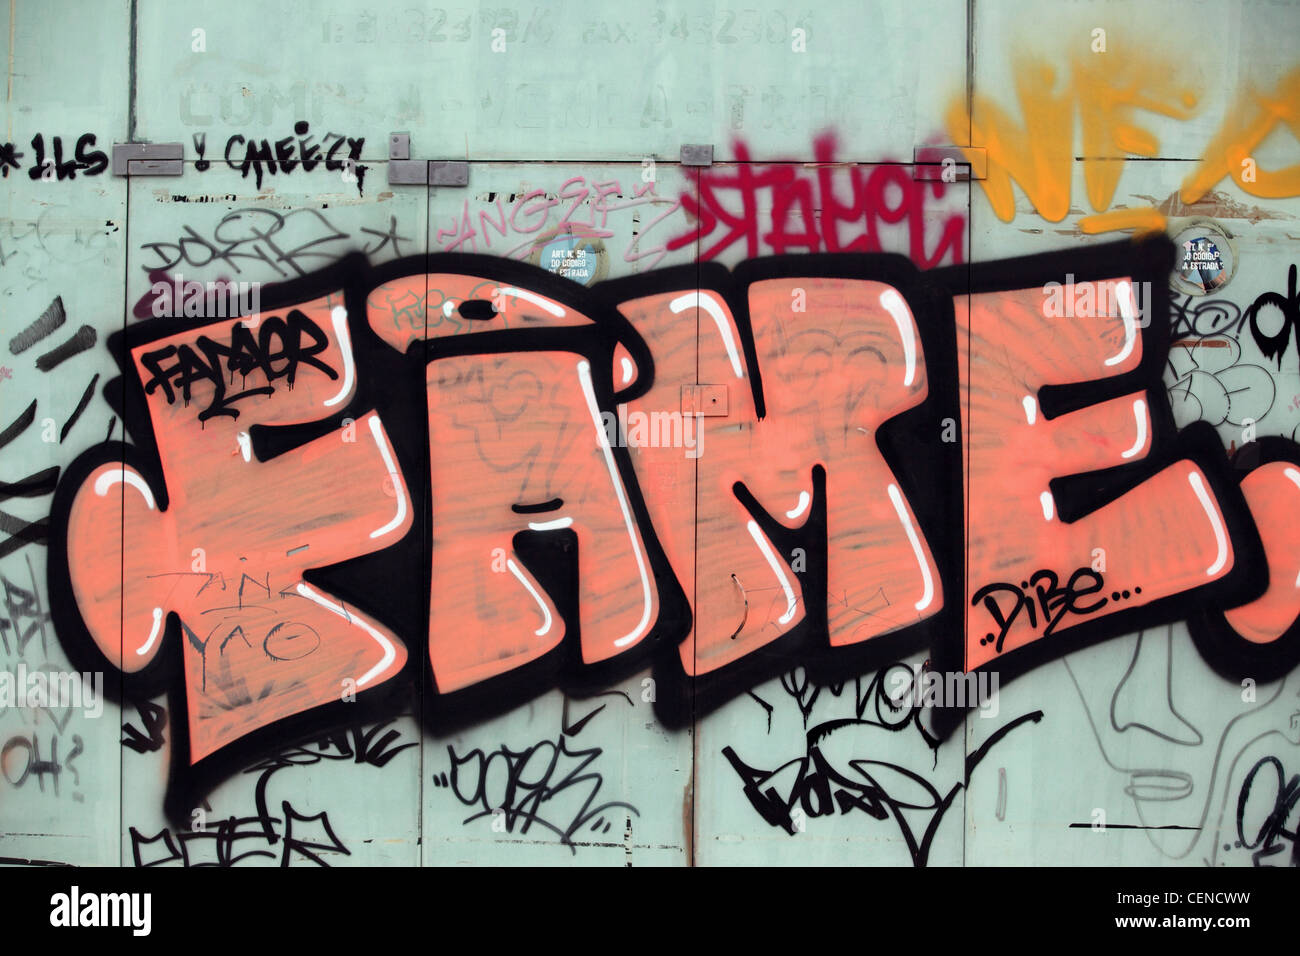 Orange graffiti stylized writing 'FAME' on closed shop front, Lisbon, Lisboa, Prtugal, Europe Stock Photo